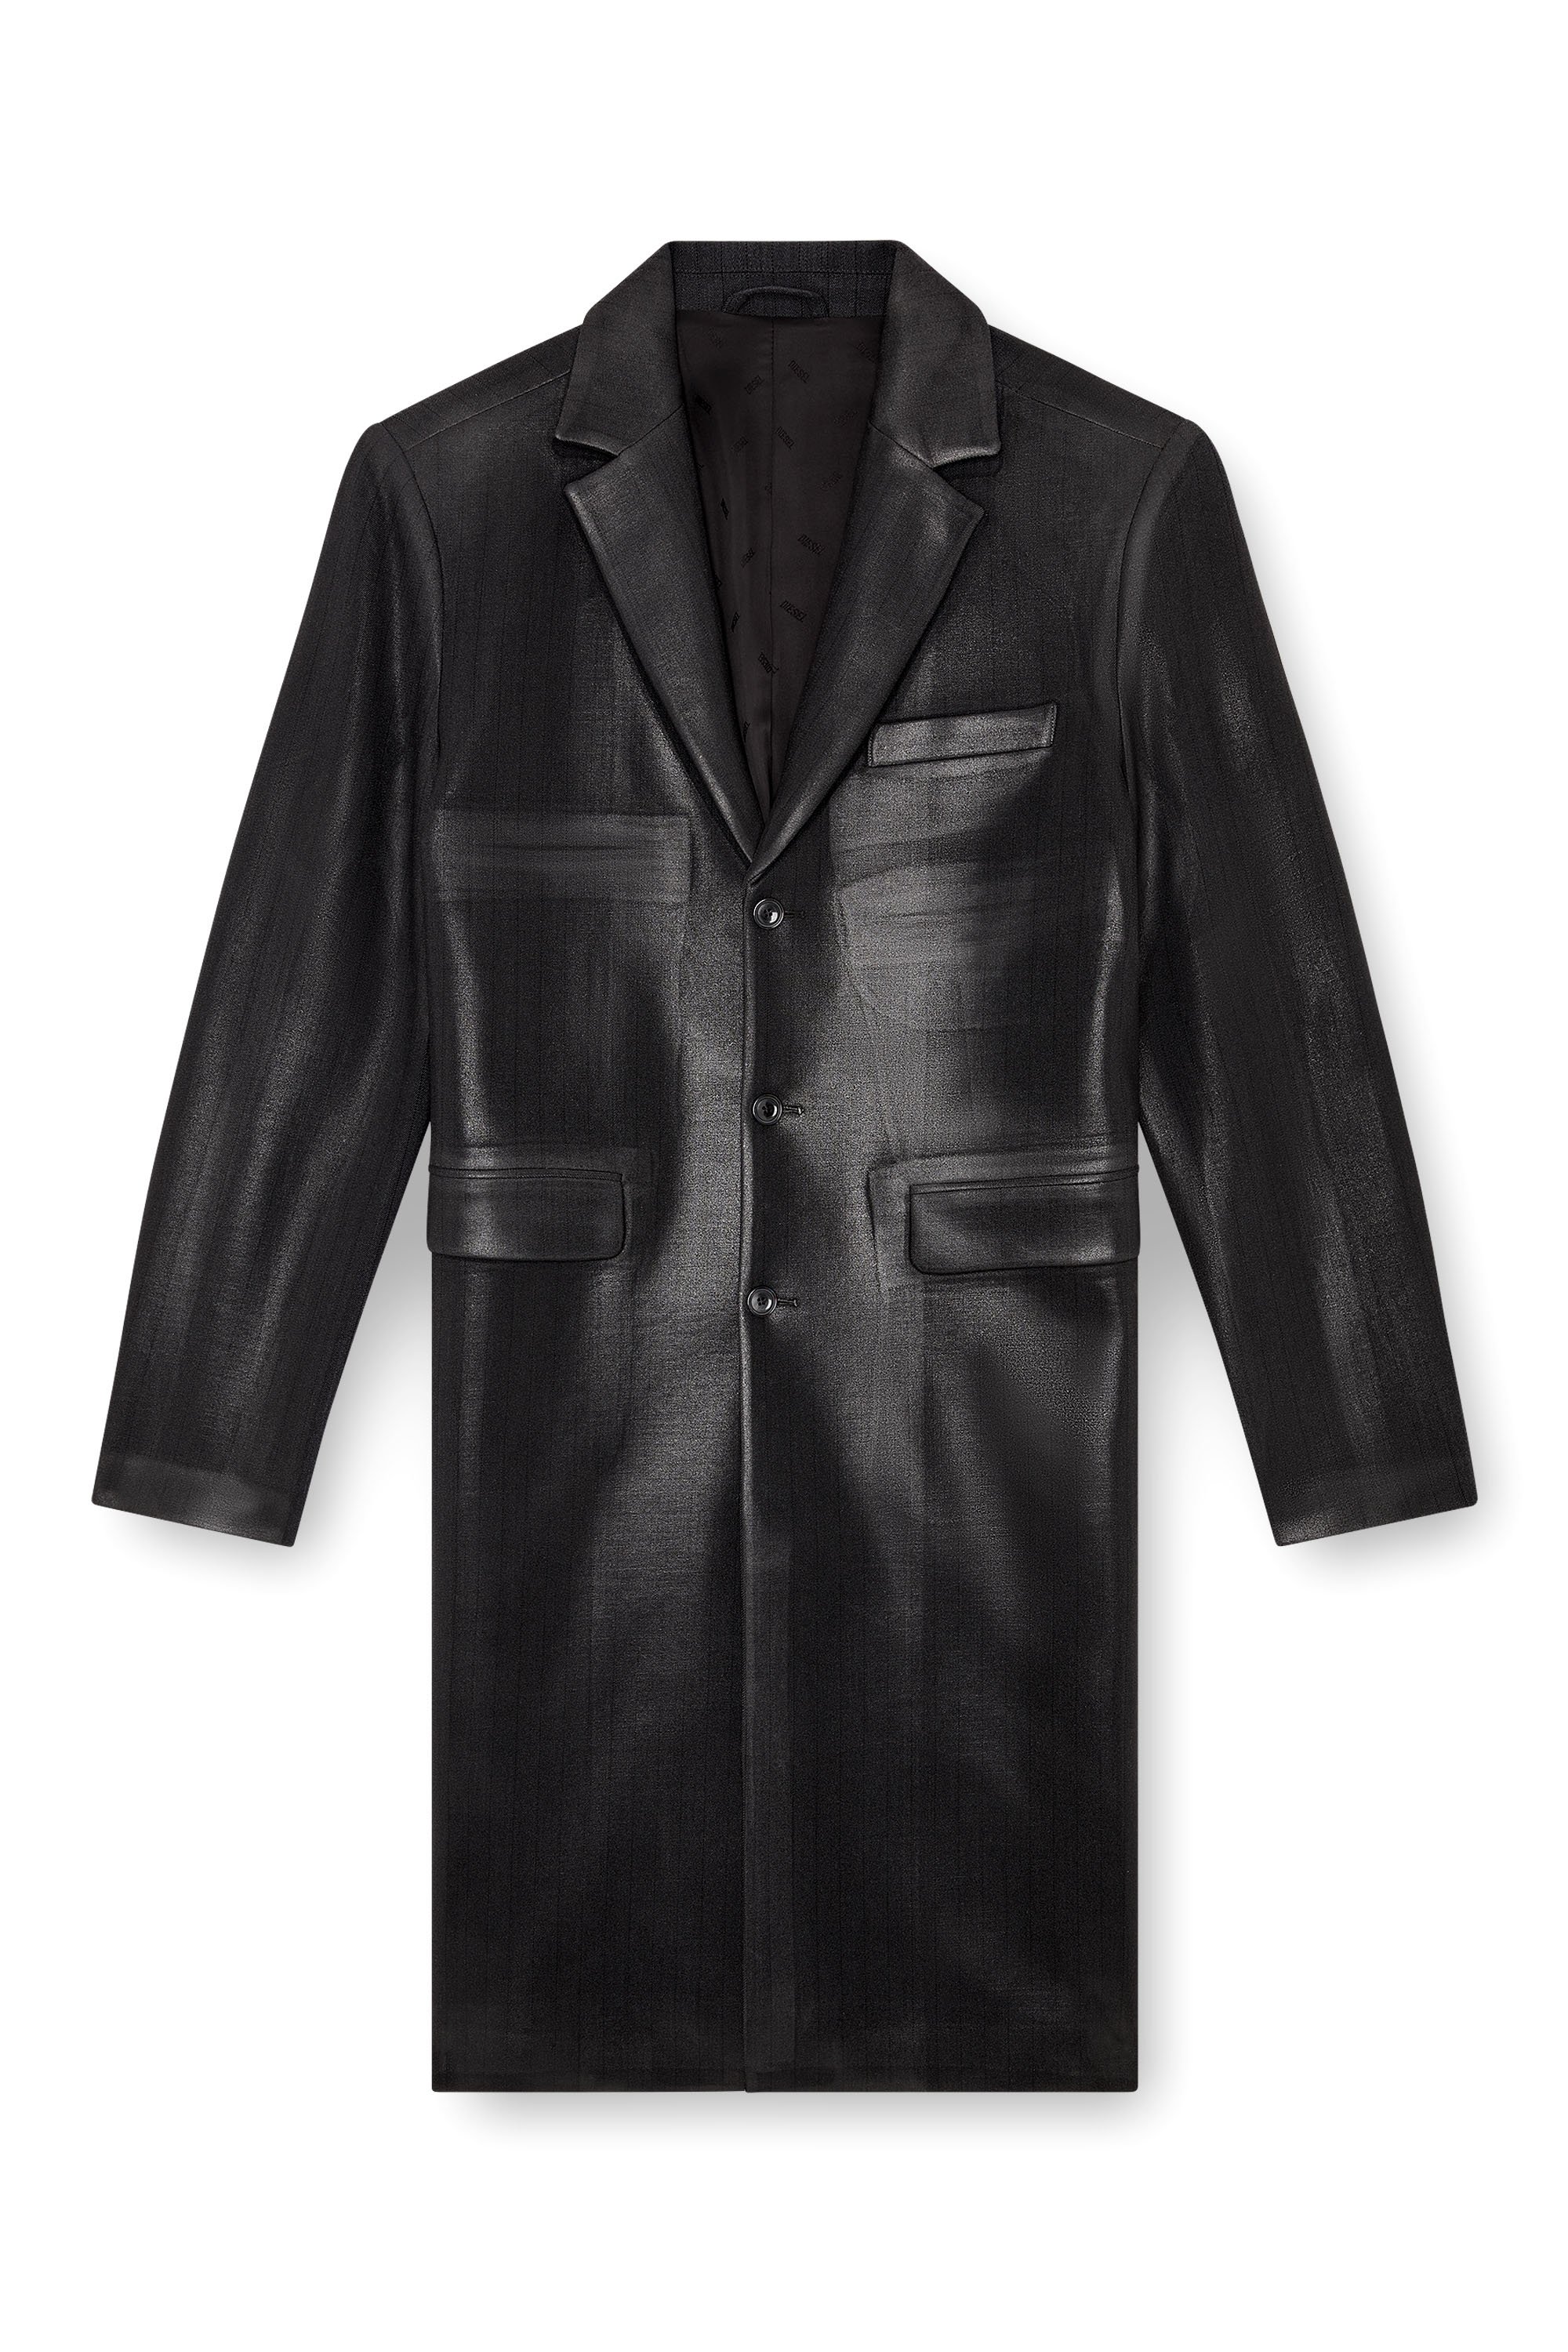 Diesel - J-DENNER, Male Coat in pinstriped cool wool in Black - Image 3